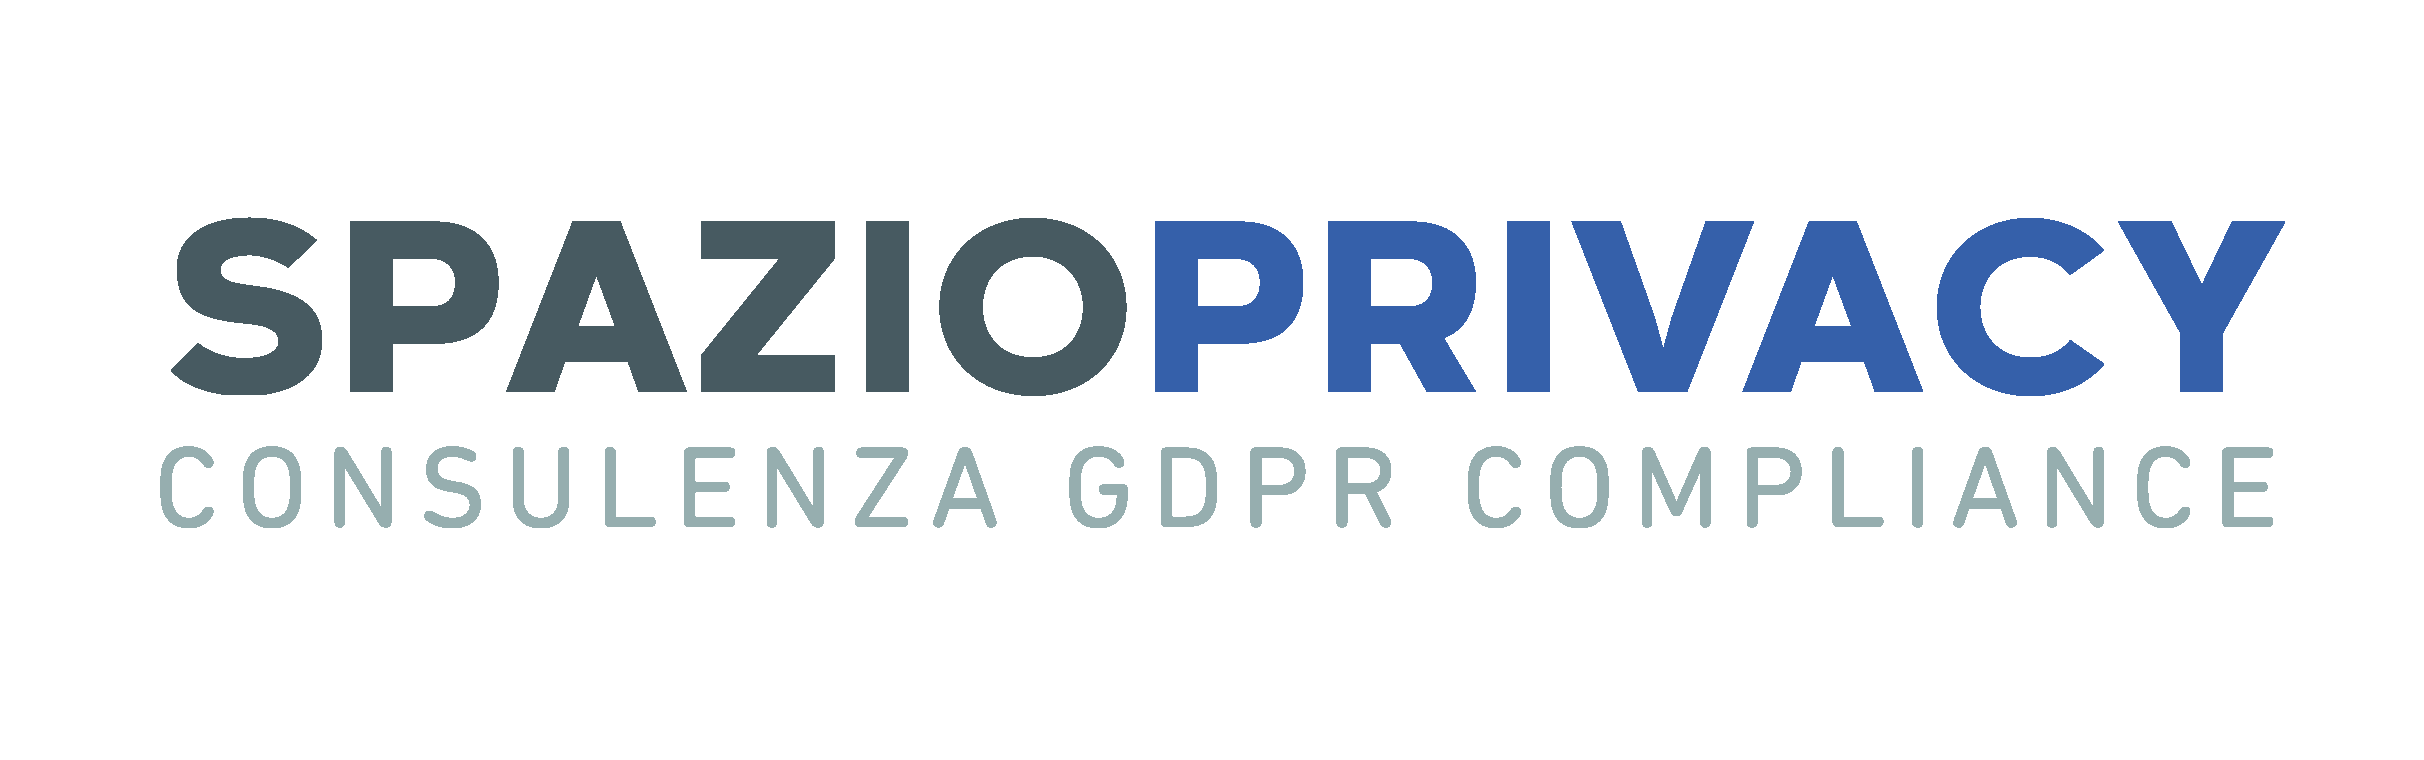 Spazio Privacy - Consulenza GDPR compliance